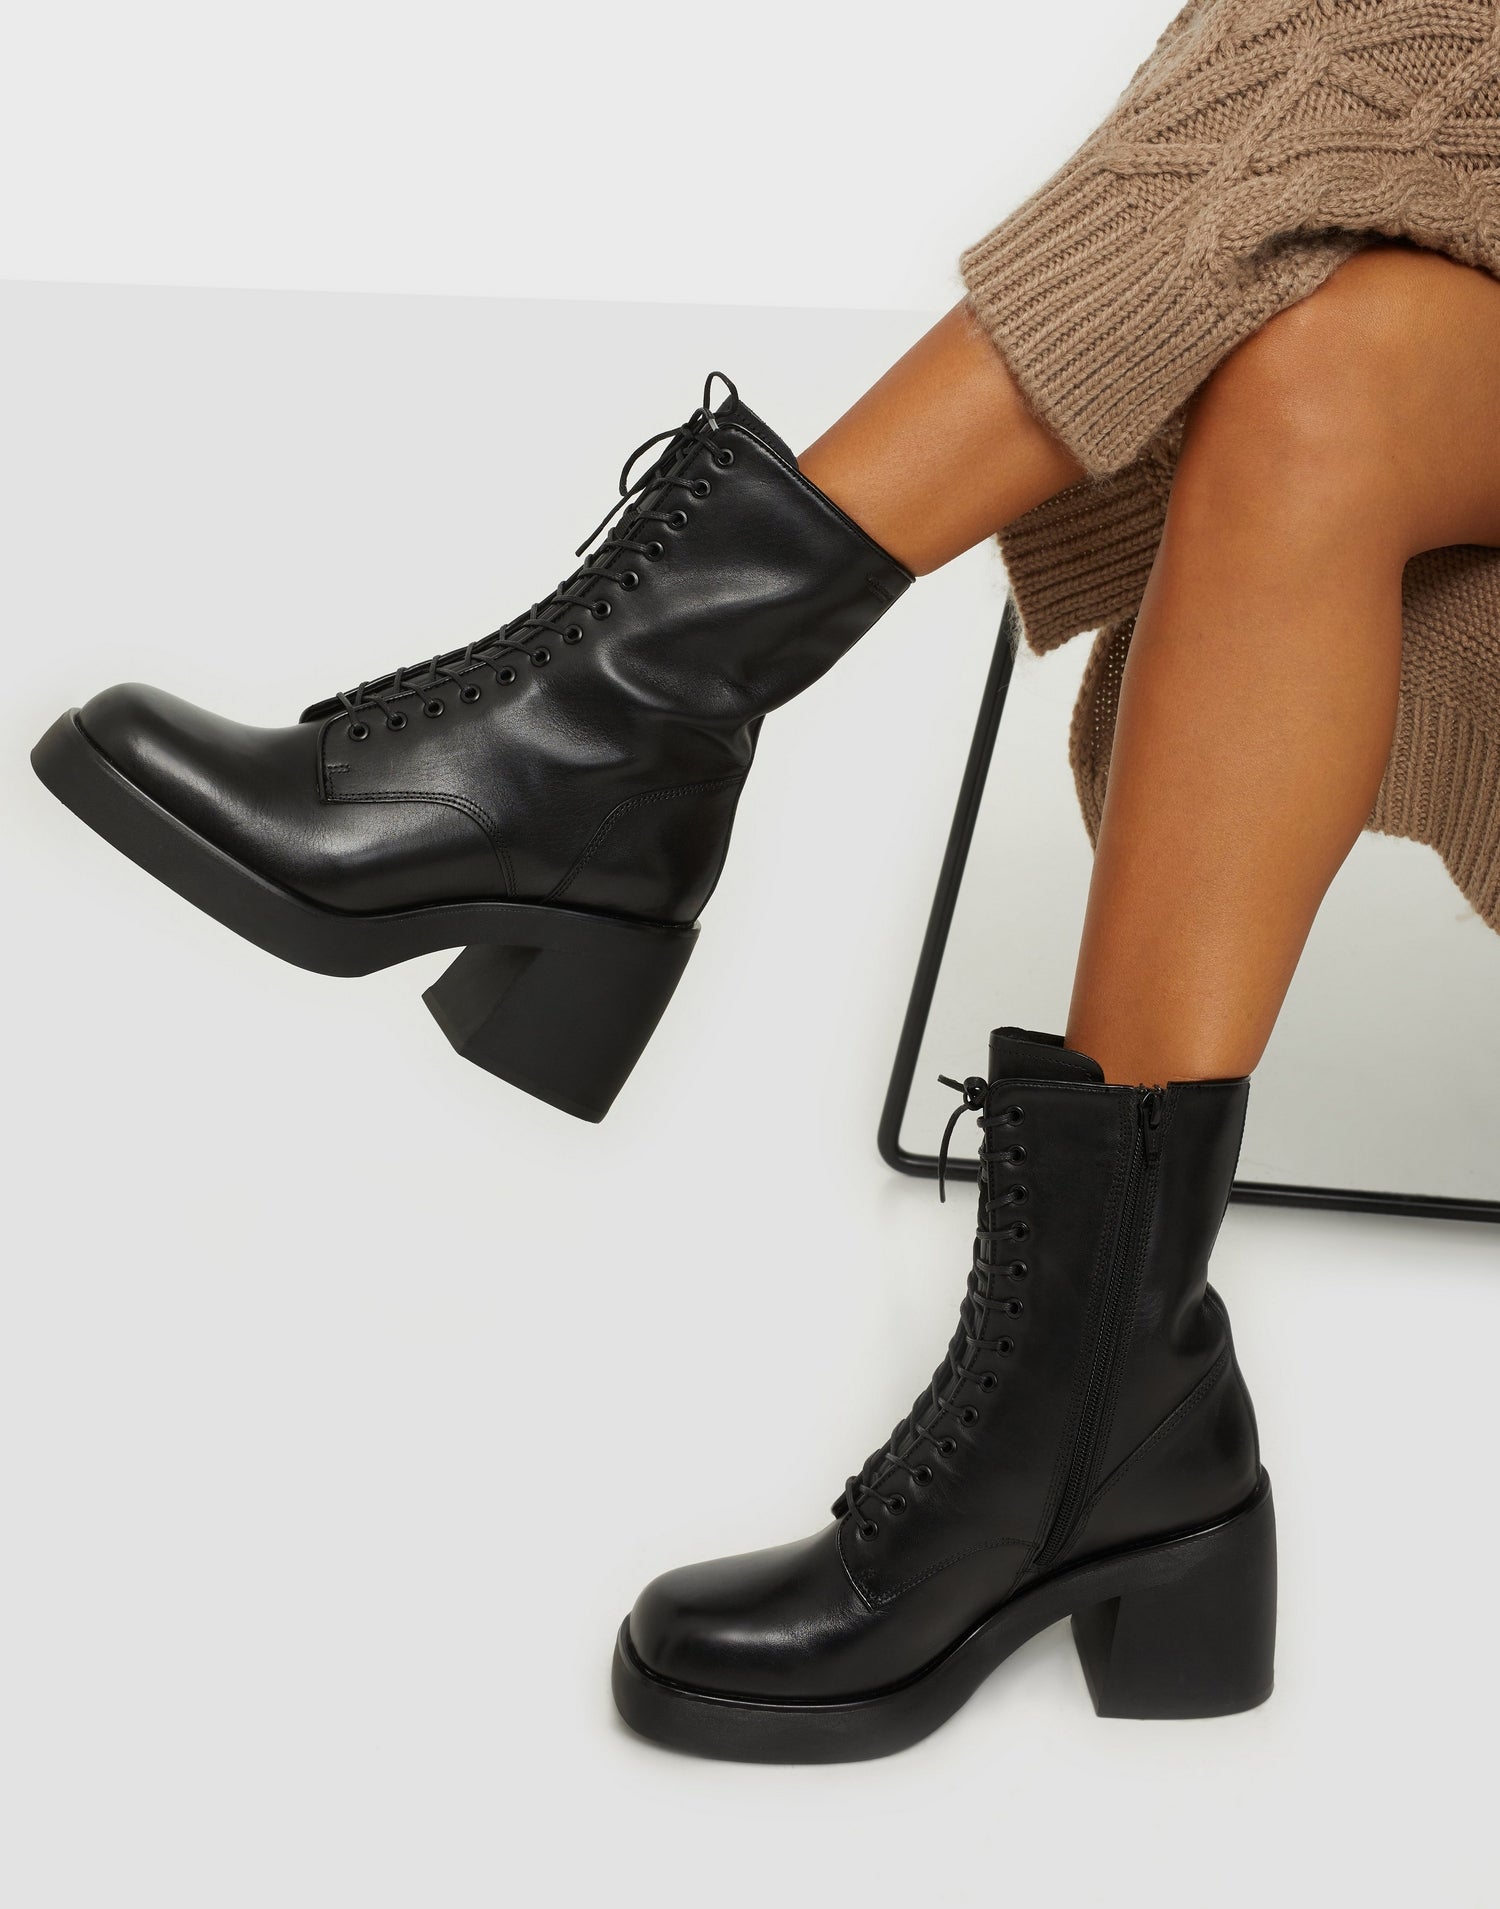 Vagabond Shoemakers Brooke Boot – Pit-a-Pats.com